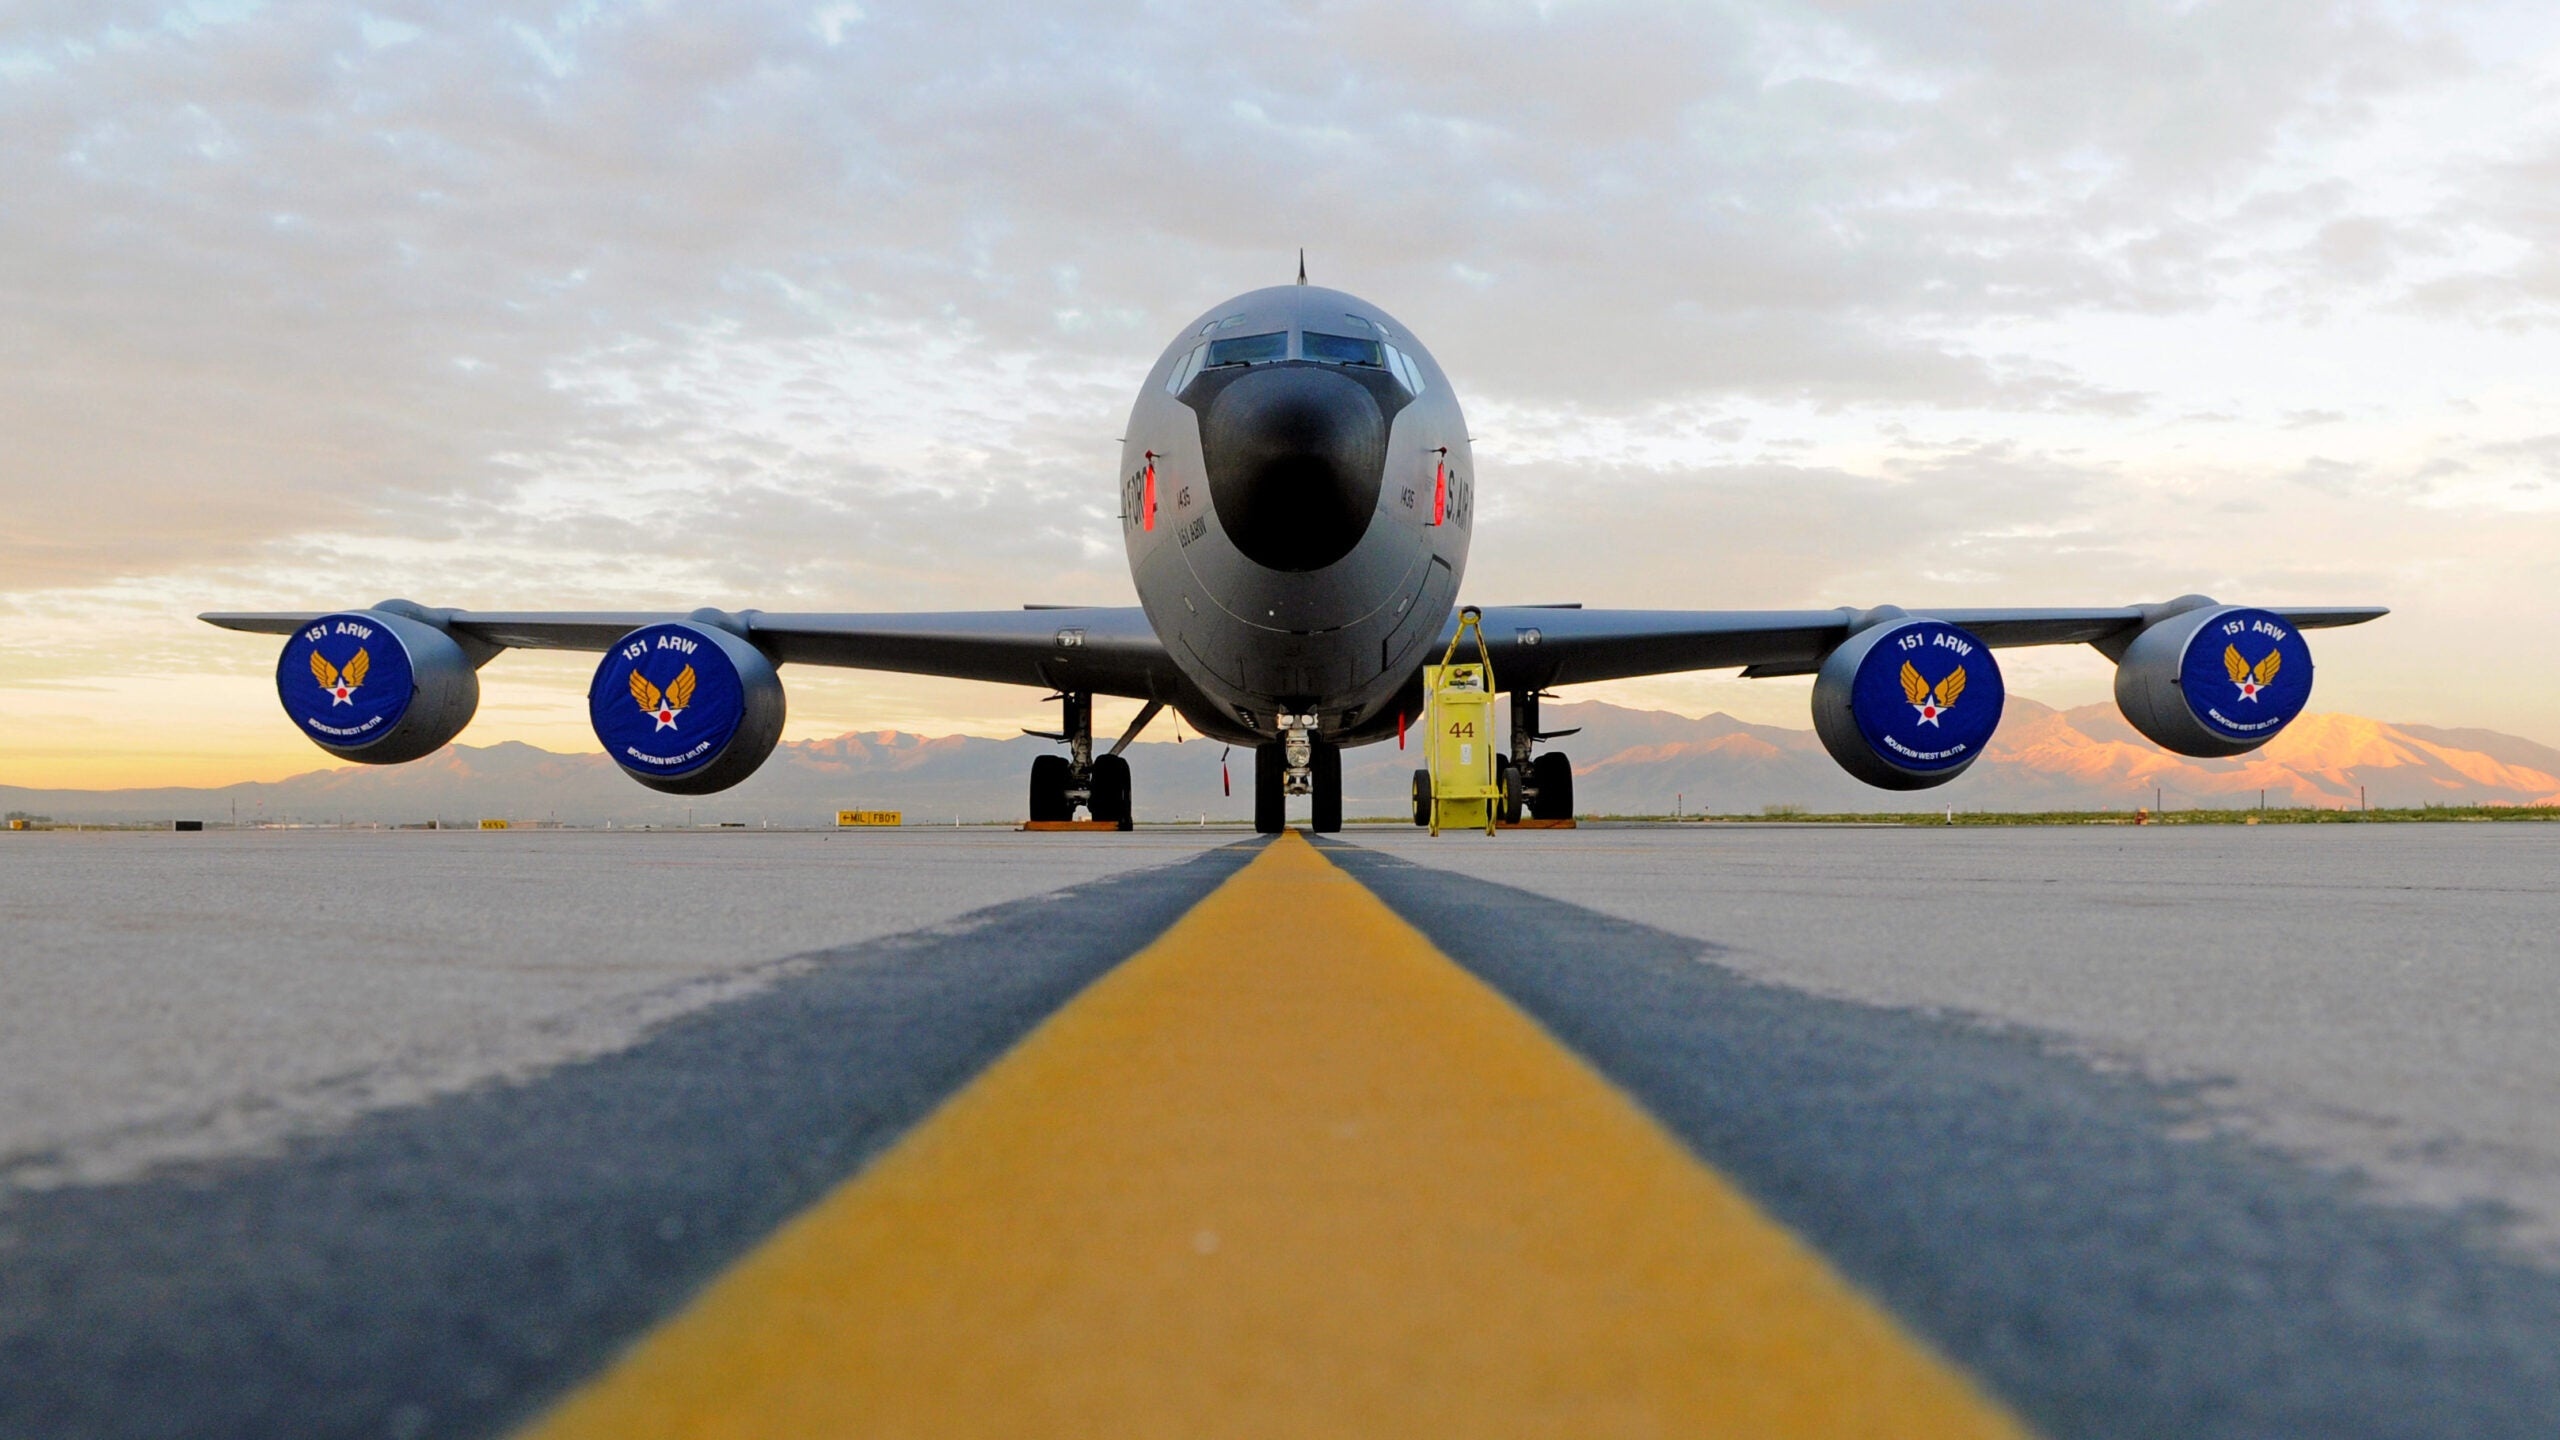 KC-135 tanker with loyal wingman drone, Impressive aircraft testing, 2560x1440 HD Desktop